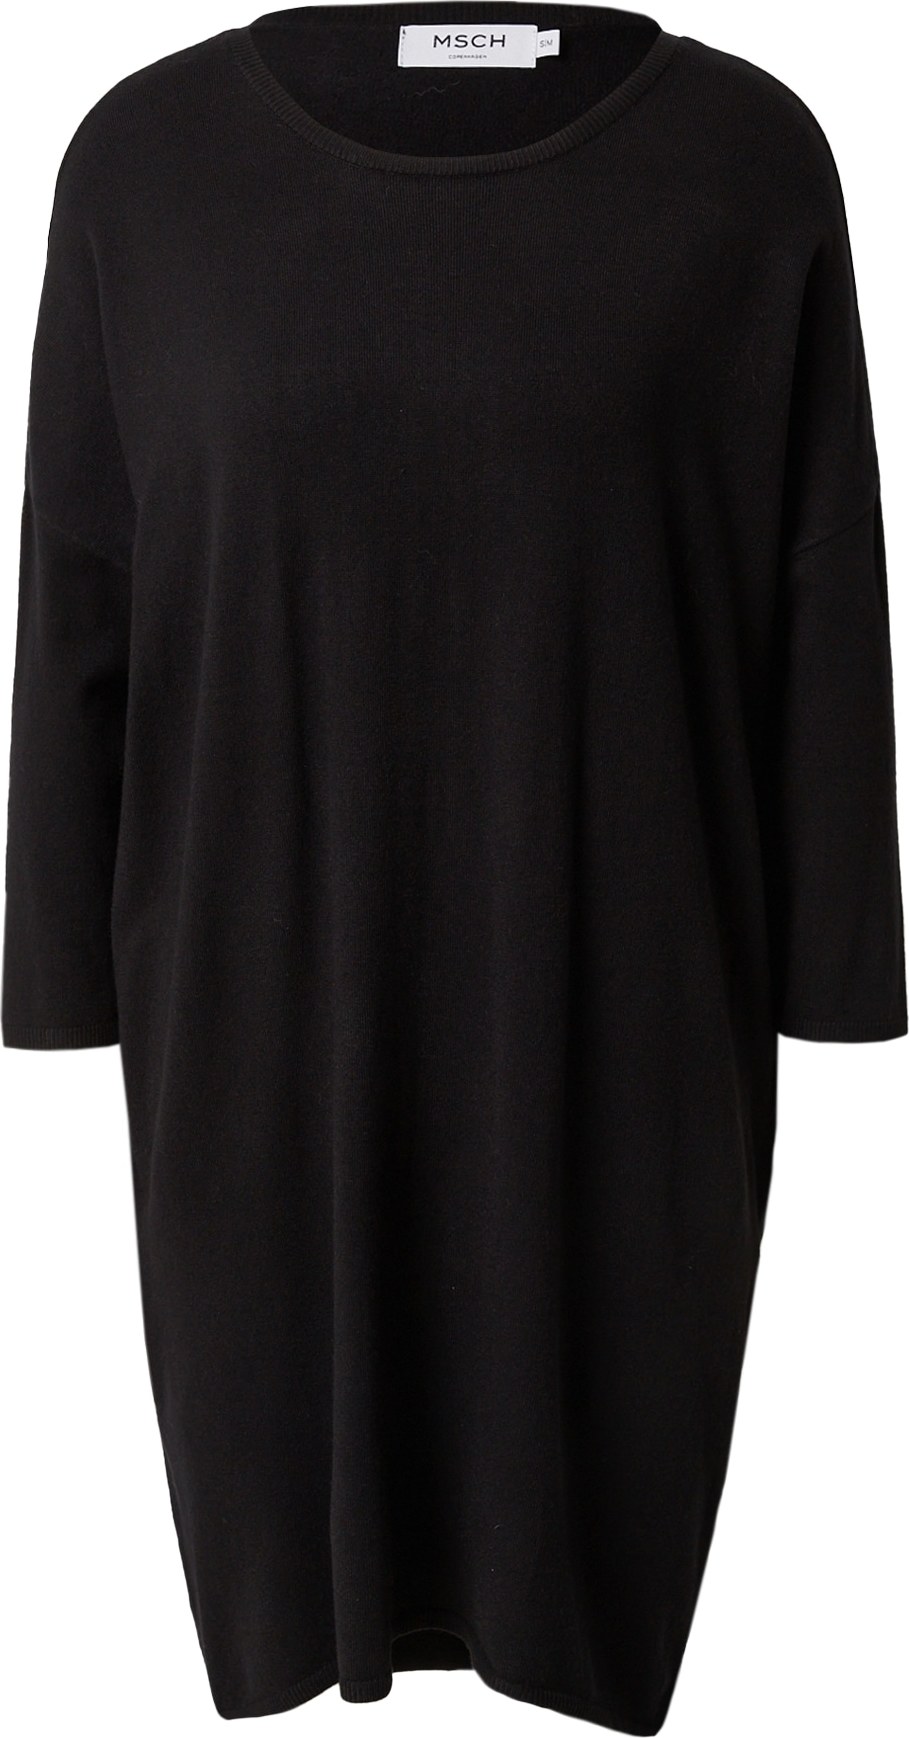 MOSS COPENHAGEN Úpletové šaty 'Rachelle' černá